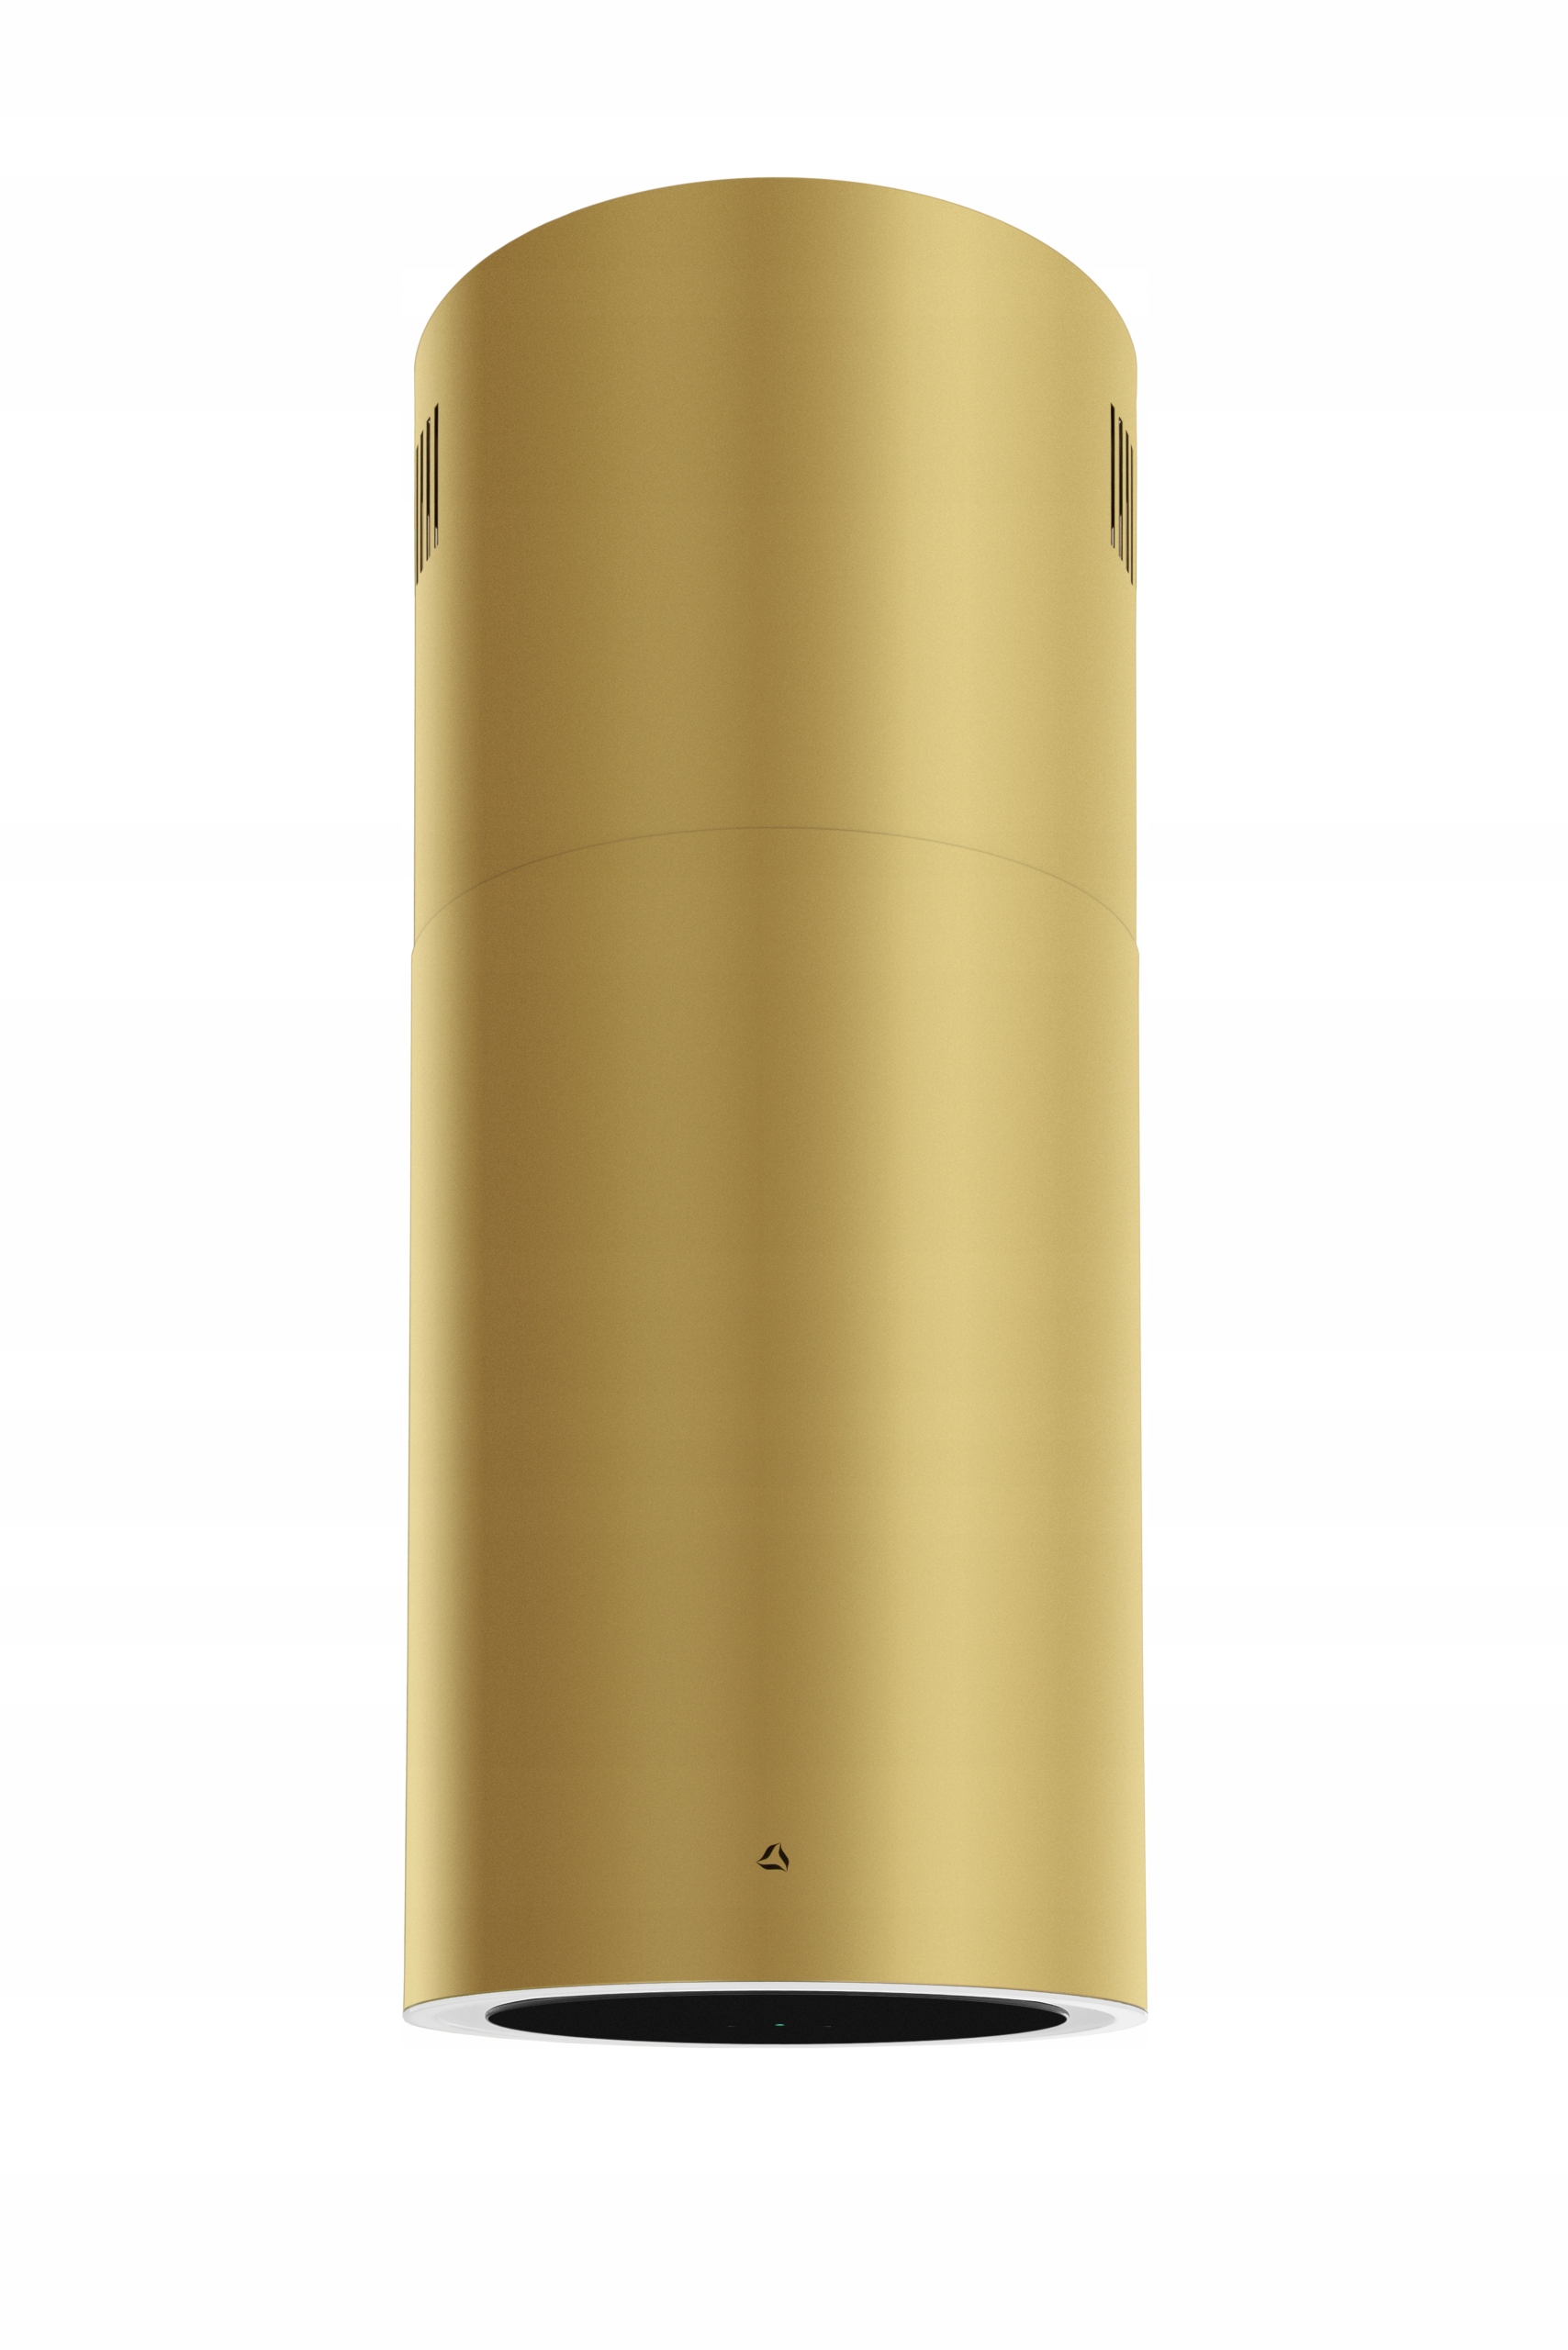 Вытяжка cylindra Isola 39.4 Gold золотой